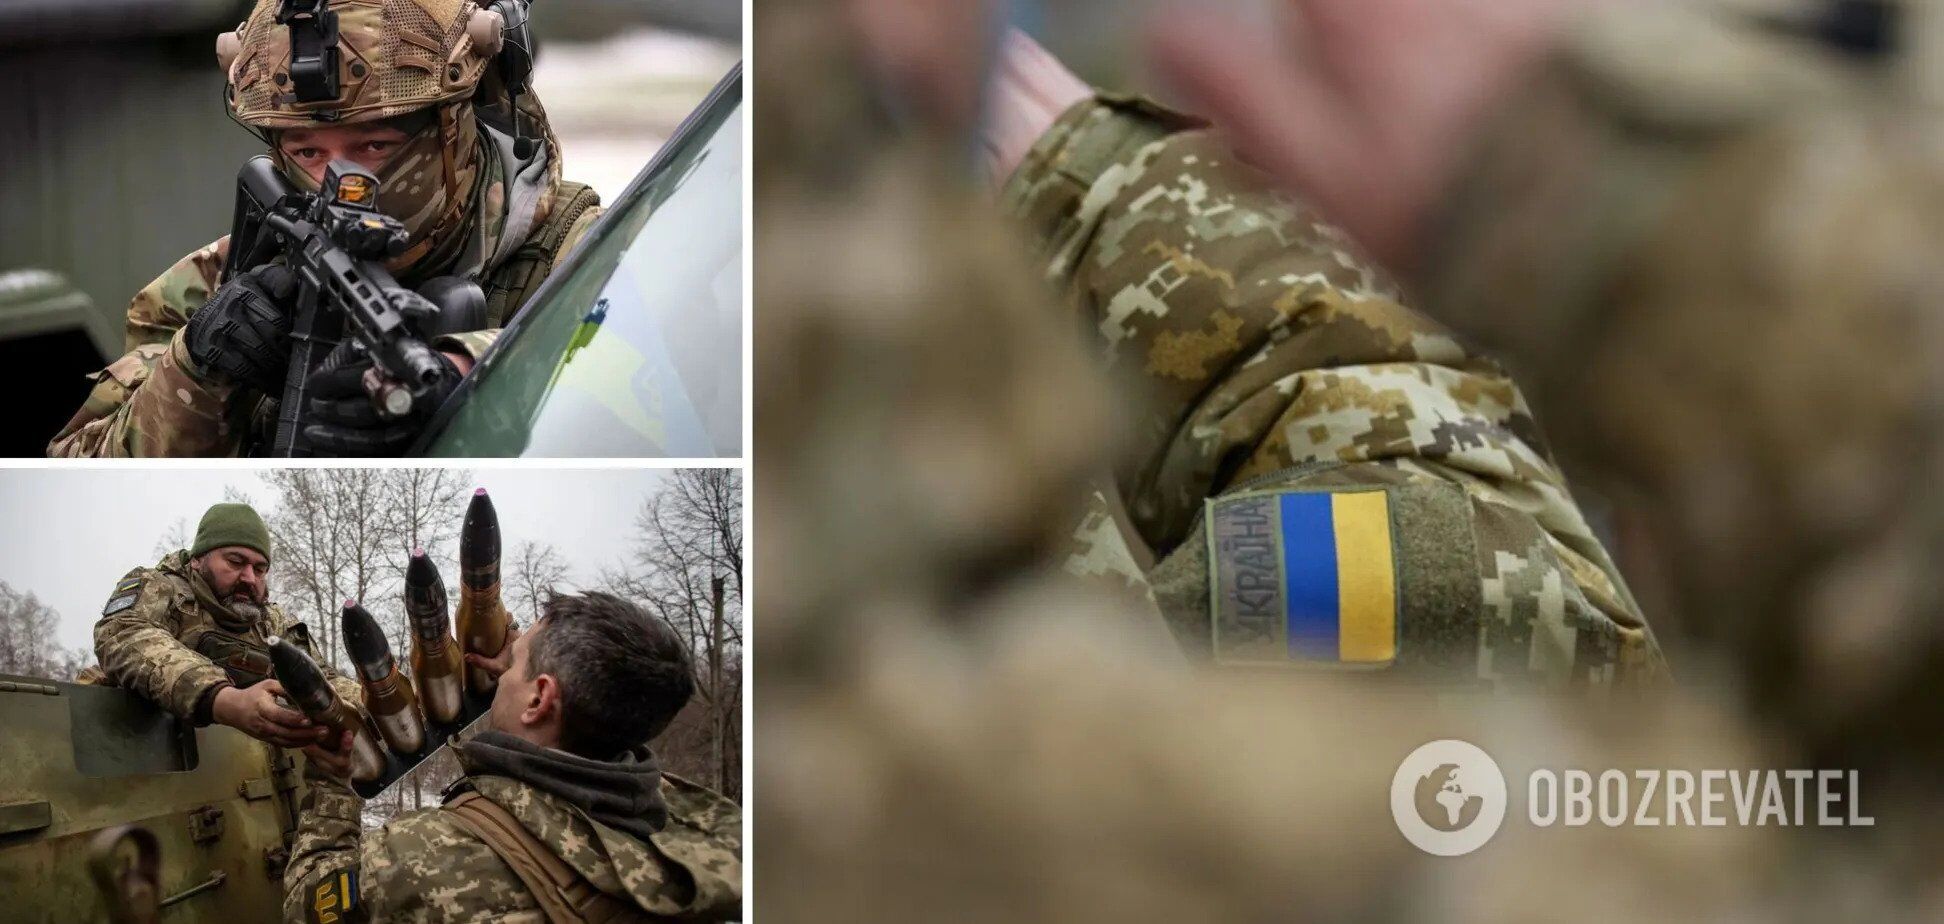 Це переломний момент для України і світу: у Німеччині пройшла восьма зустріч у форматі ''Рамштайн''. Відео 